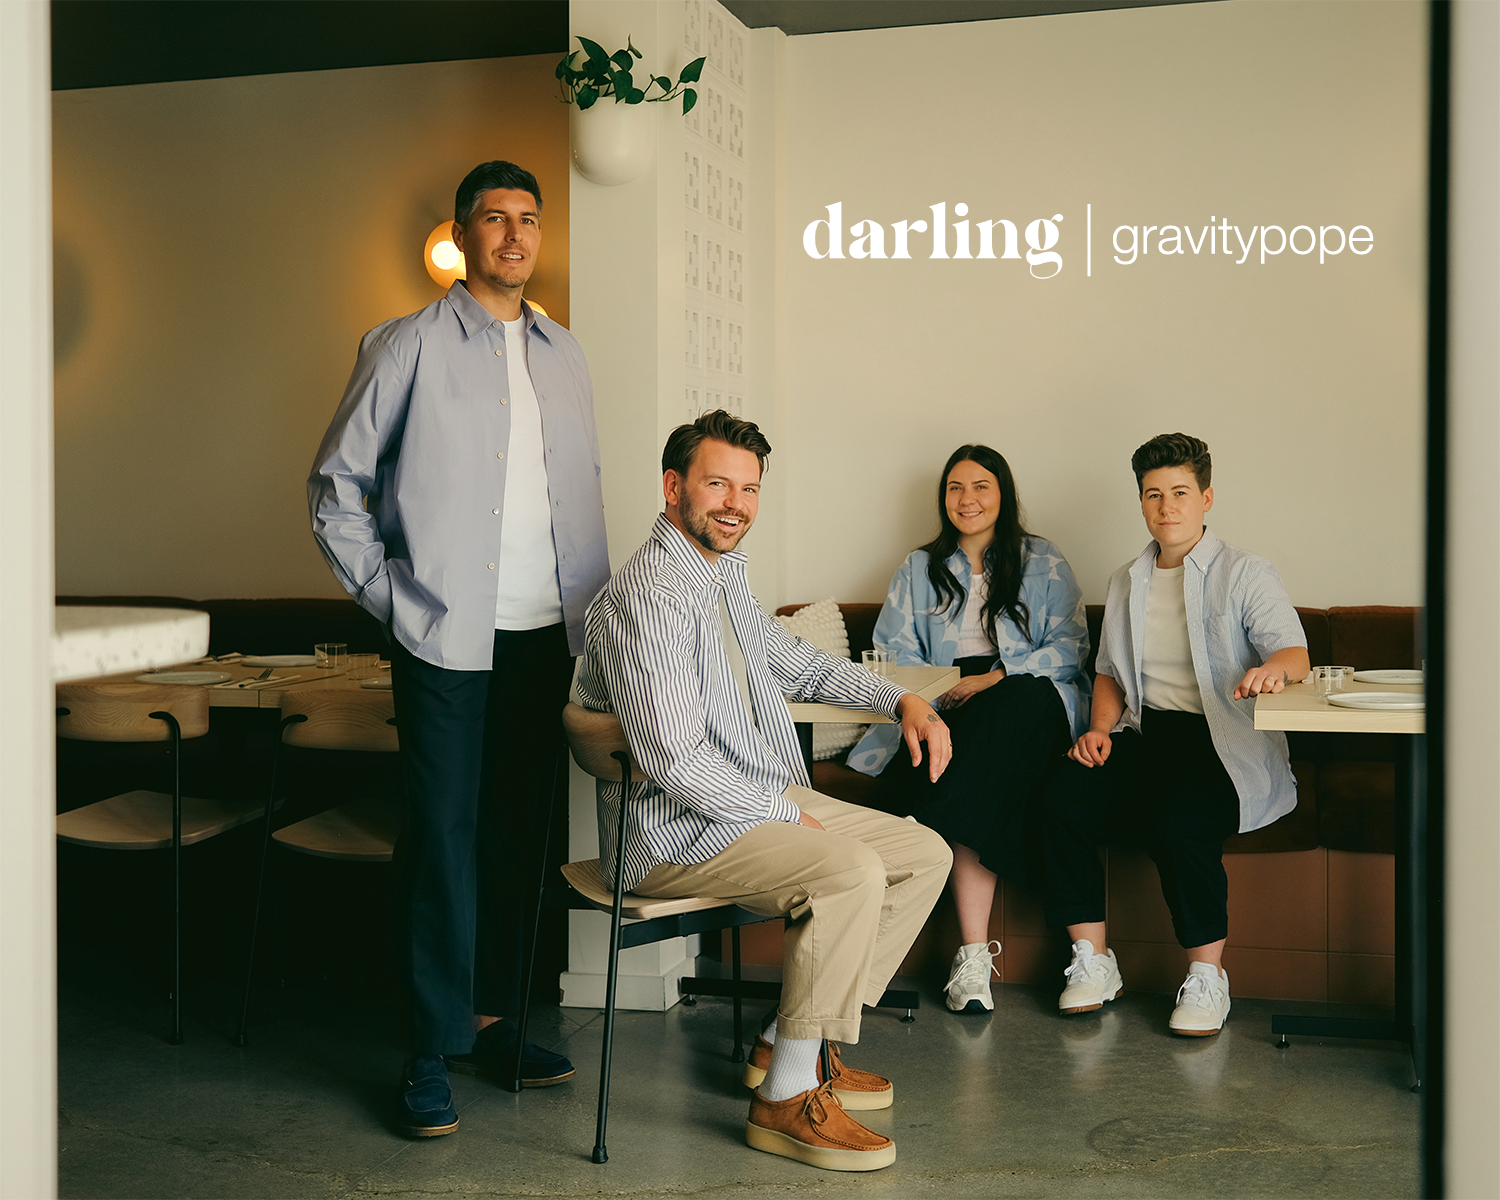 gravitypope Community Series: Darling